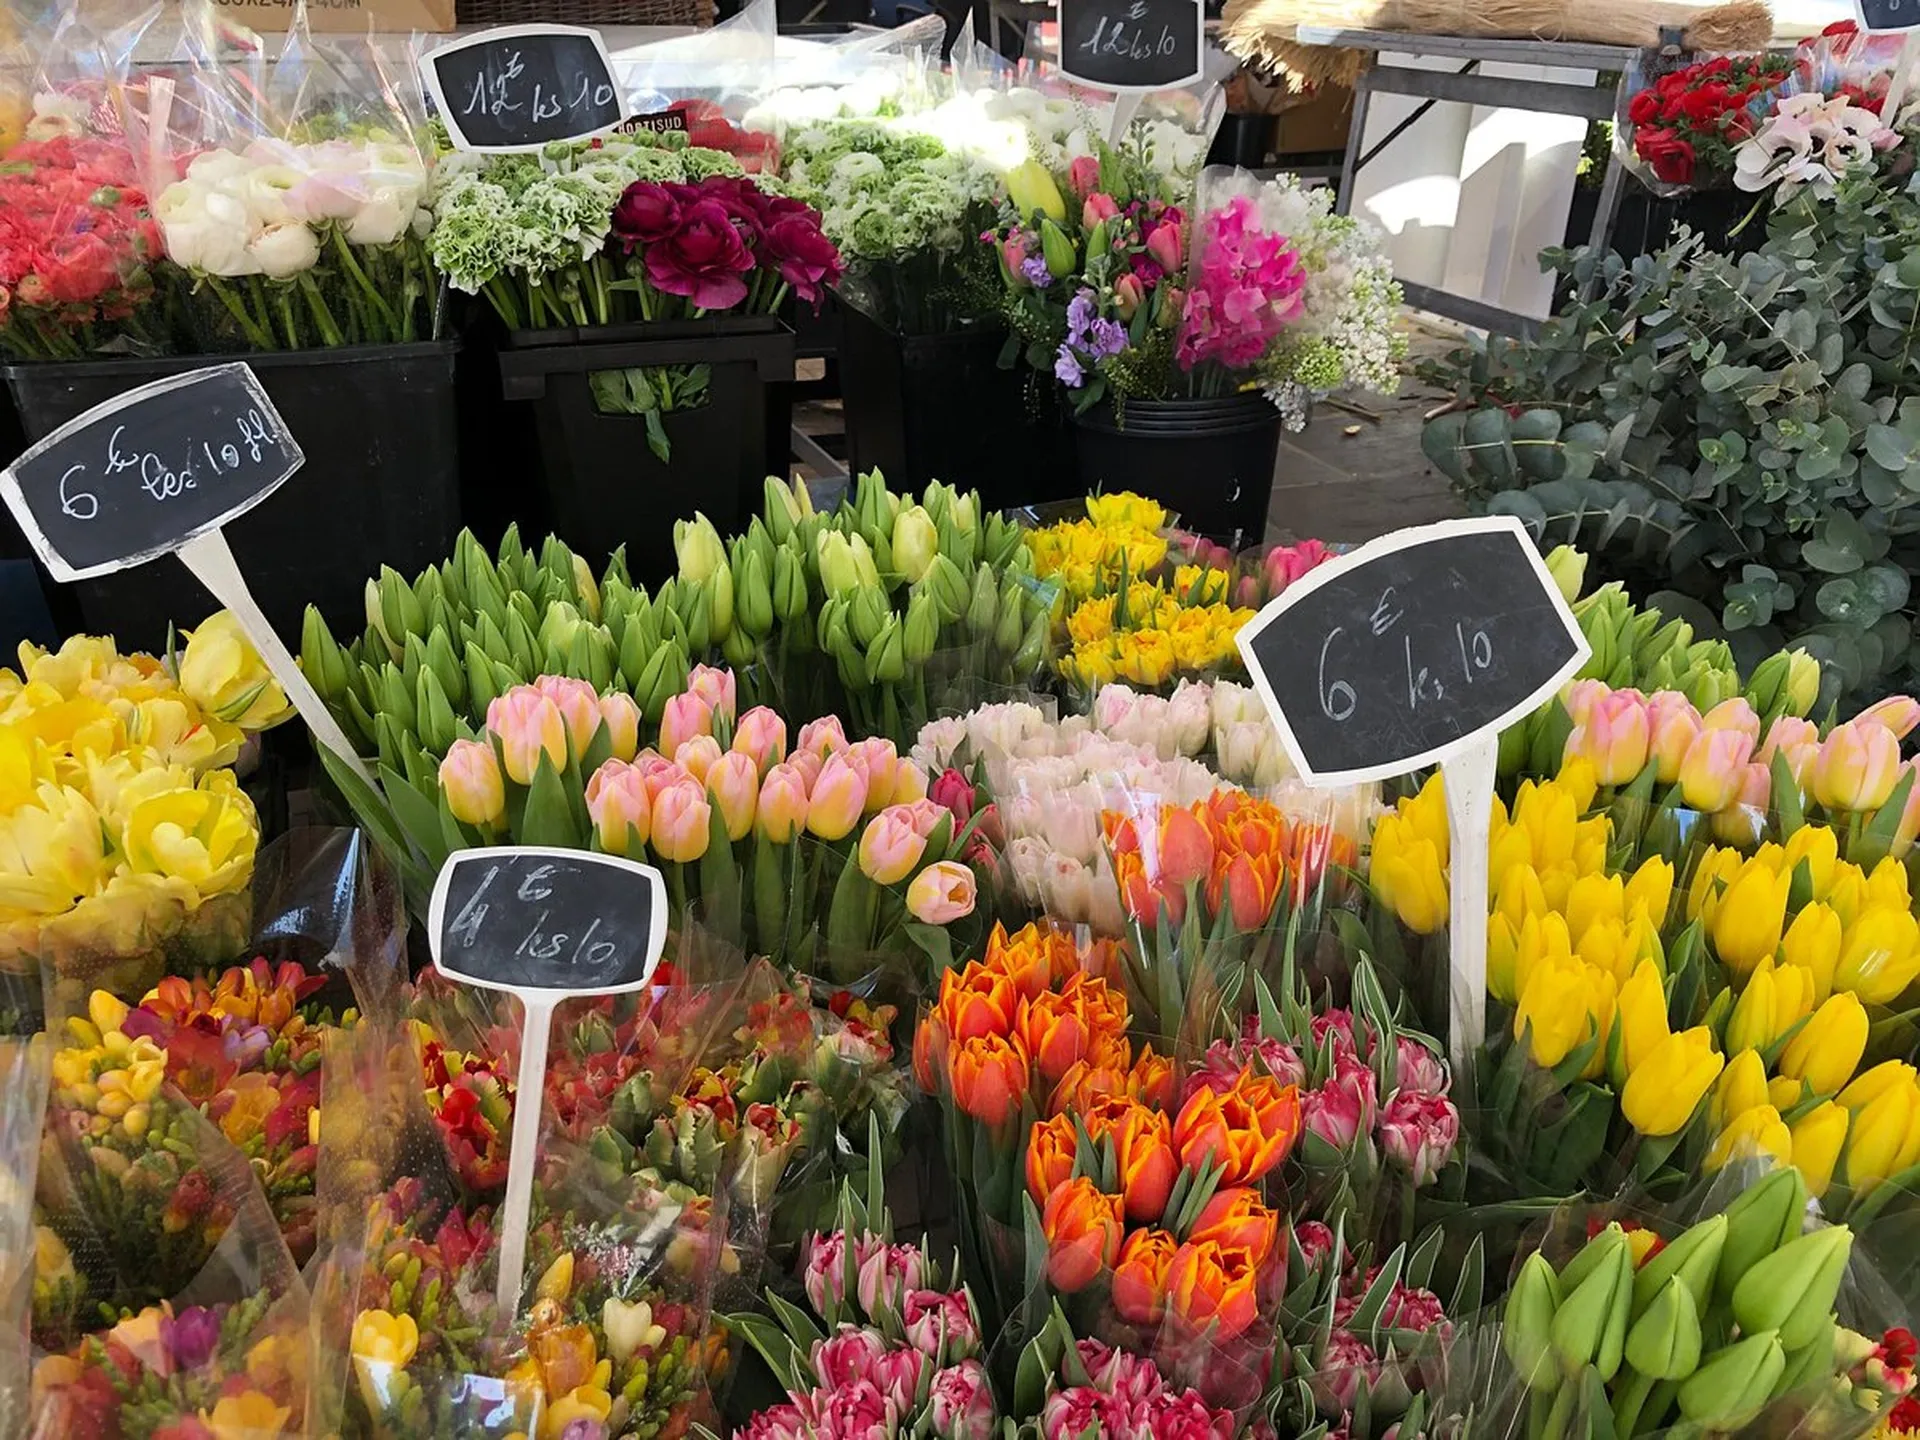 Explore Marche aux Fleurs Cours Saleya 